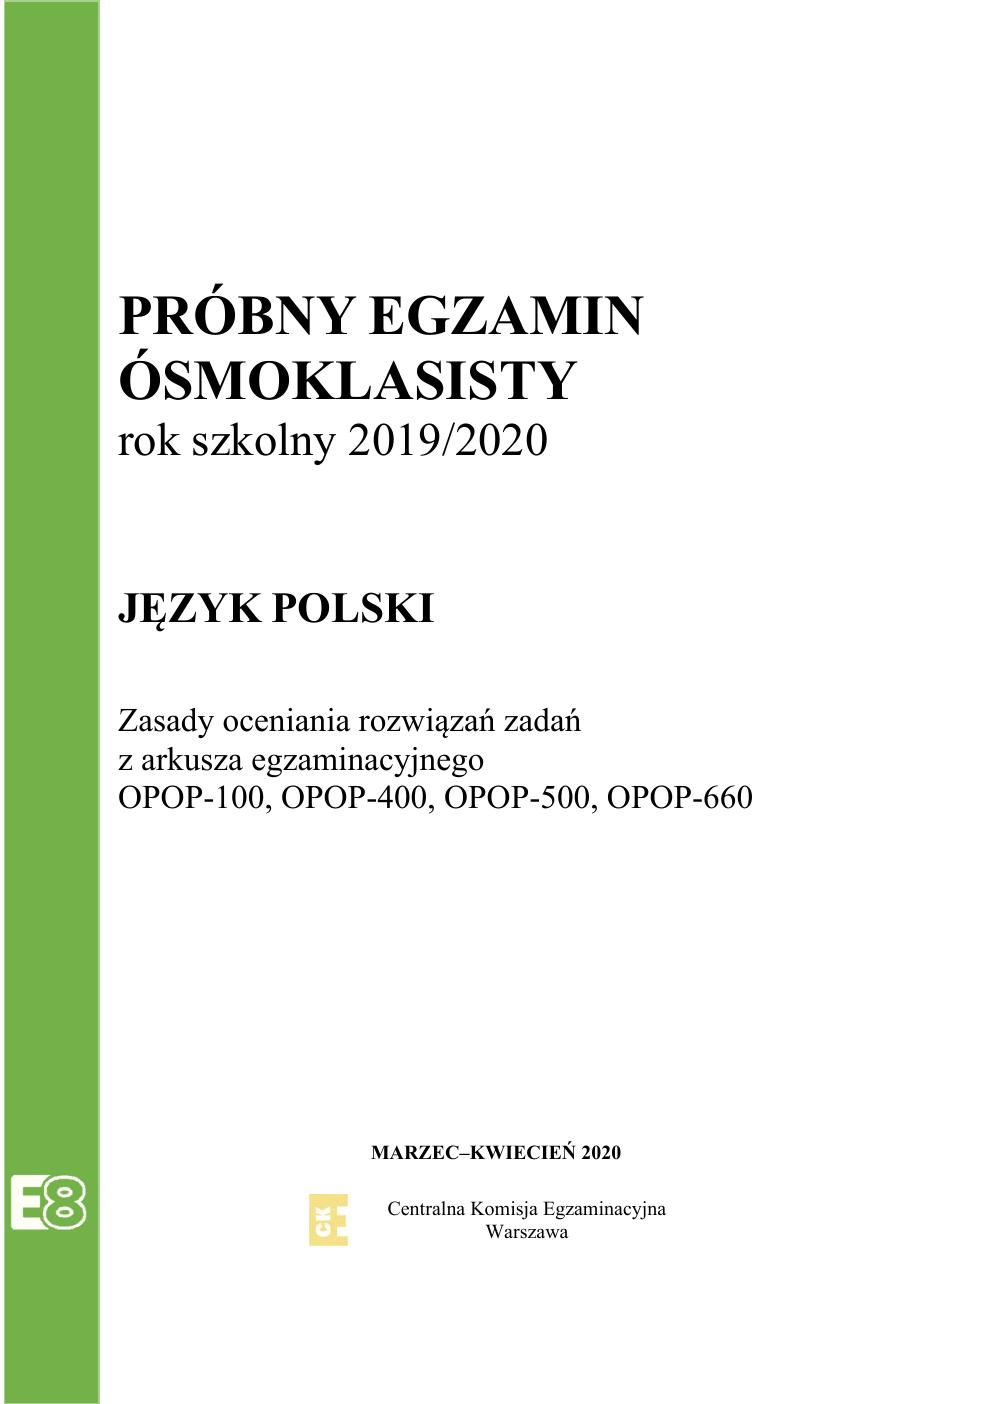 odpowiedzi - język polski - egzamin ósmoklasisty 2020 próbny-01